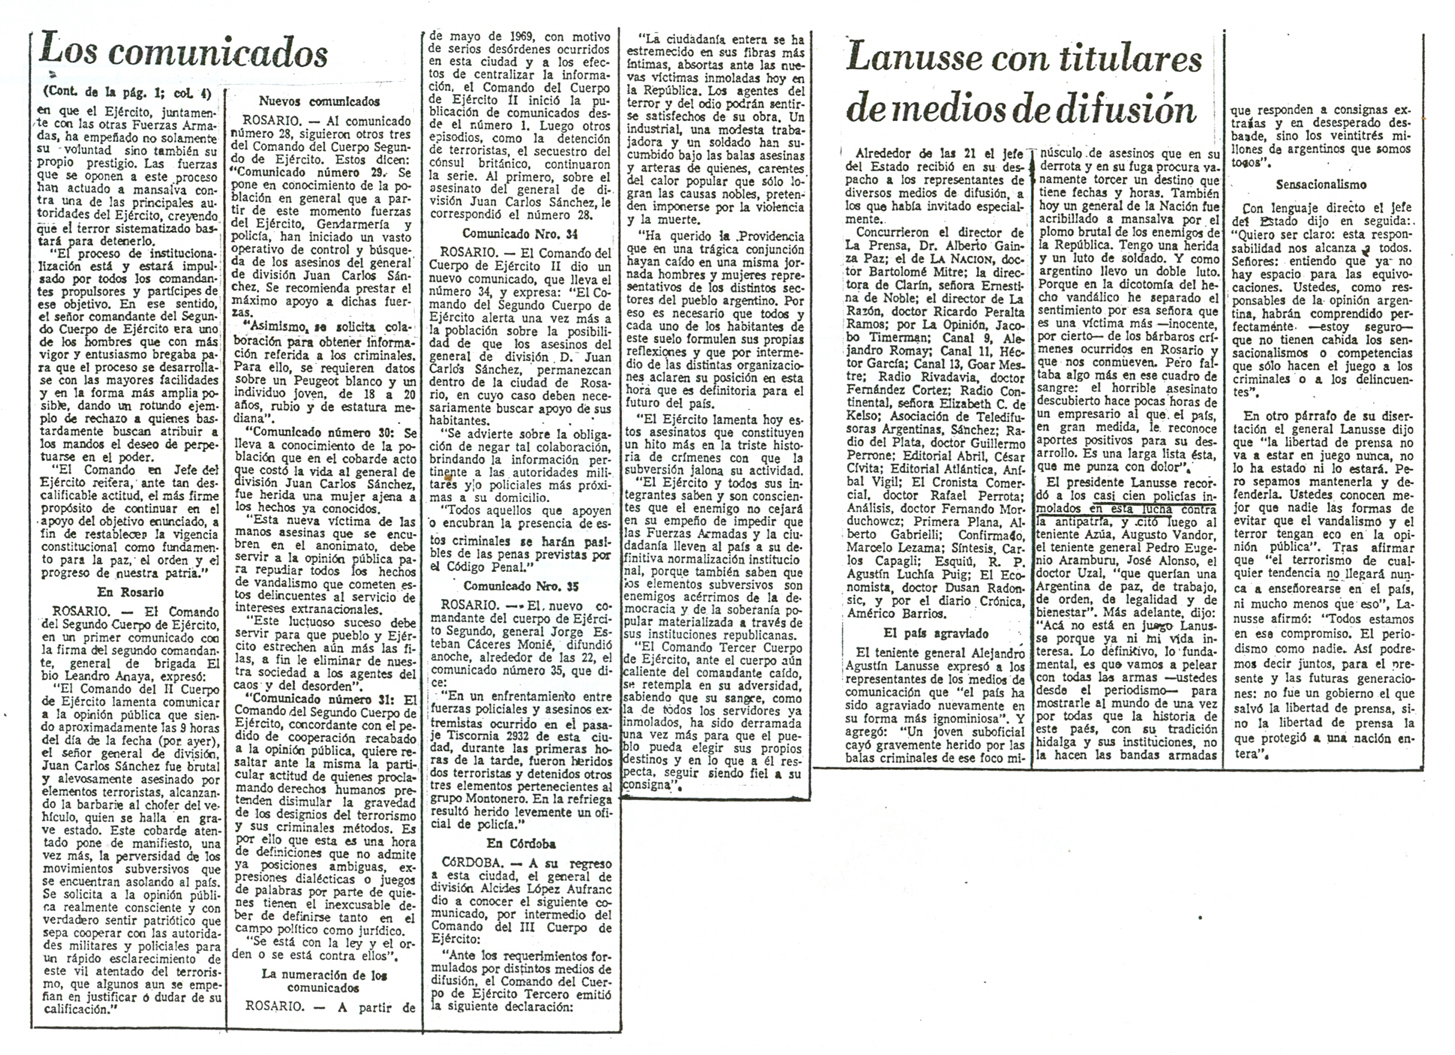 [1972-11-04+La+Nacion+-+Asesinatos+de+gral+Sanchez+y+Dr+Oberdan+Sallustro+06.jpg]